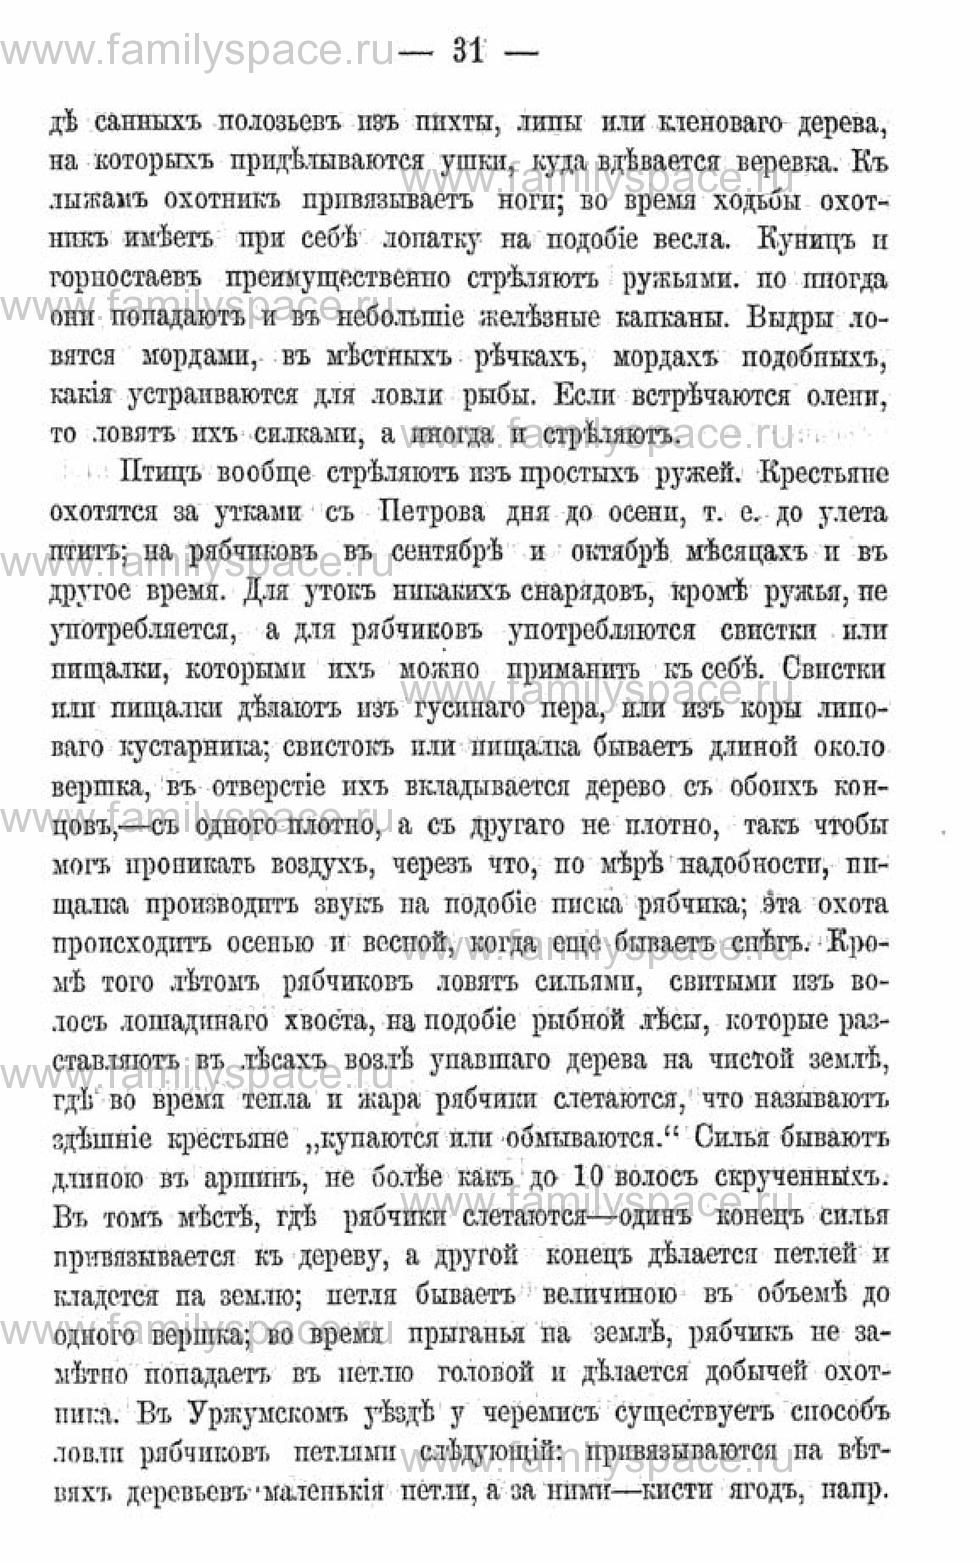 Поиск по фамилии - Календарь Вятской губернии - 1880, страница 2031